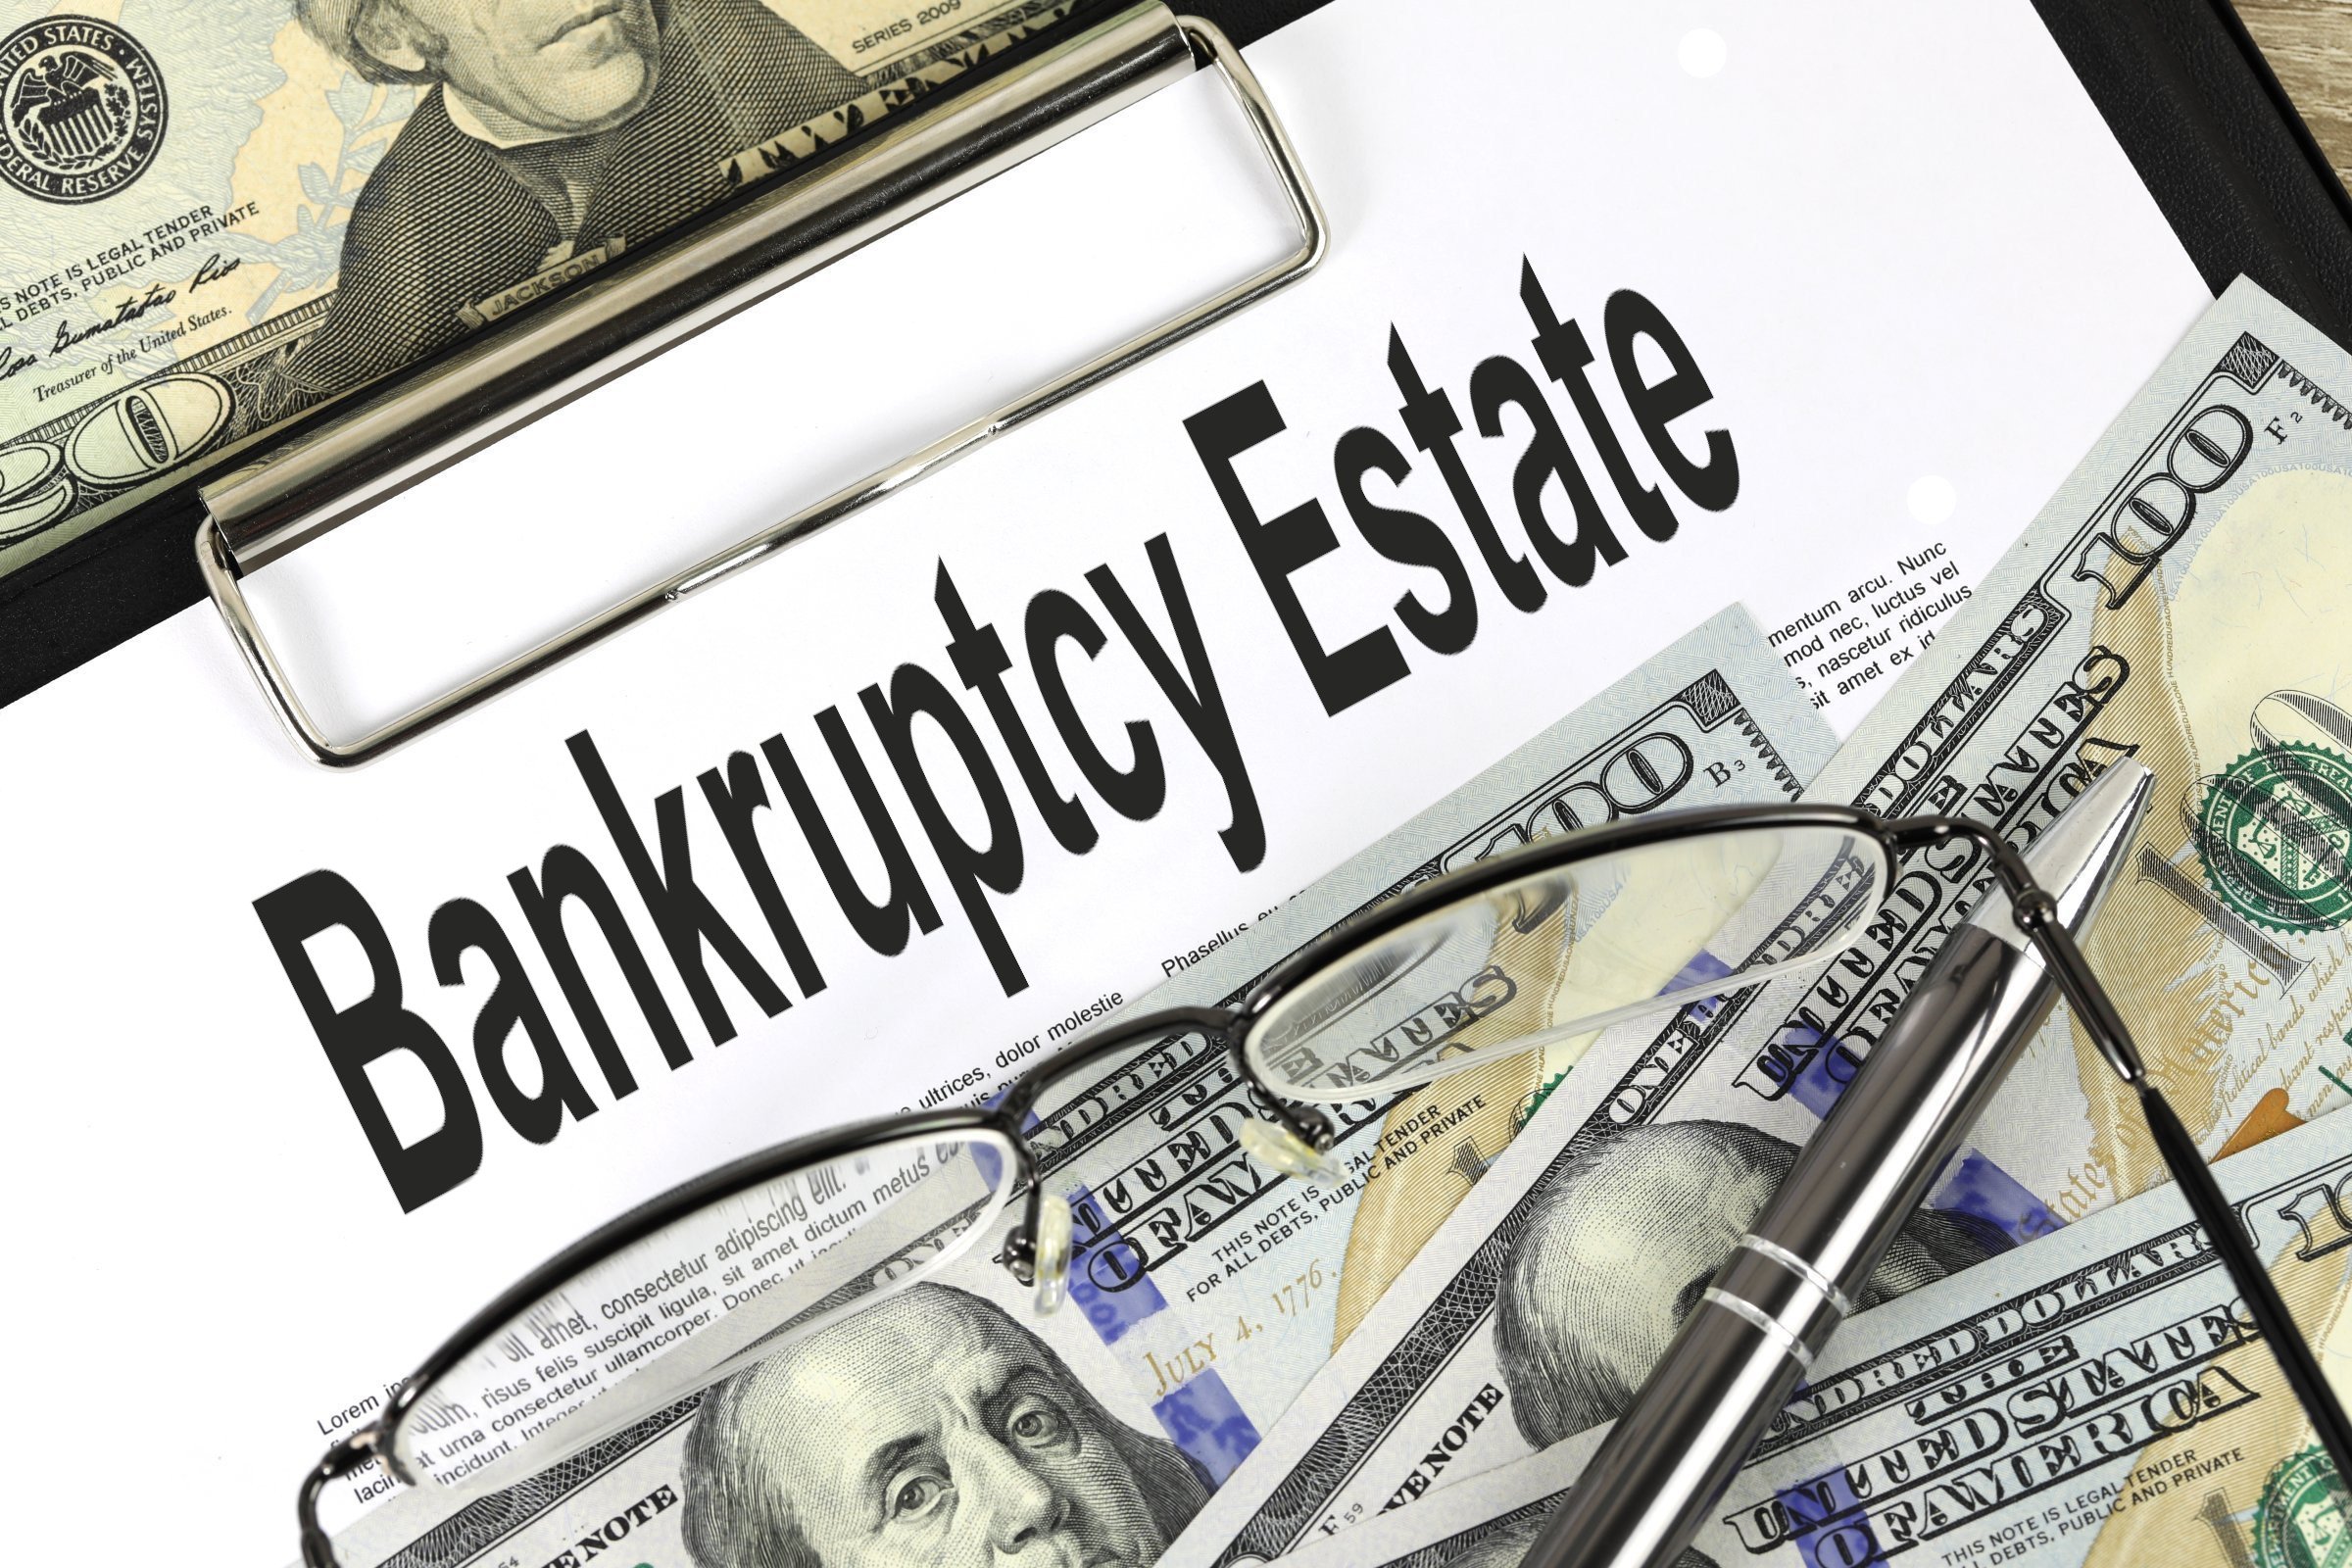 bankruptcy estate